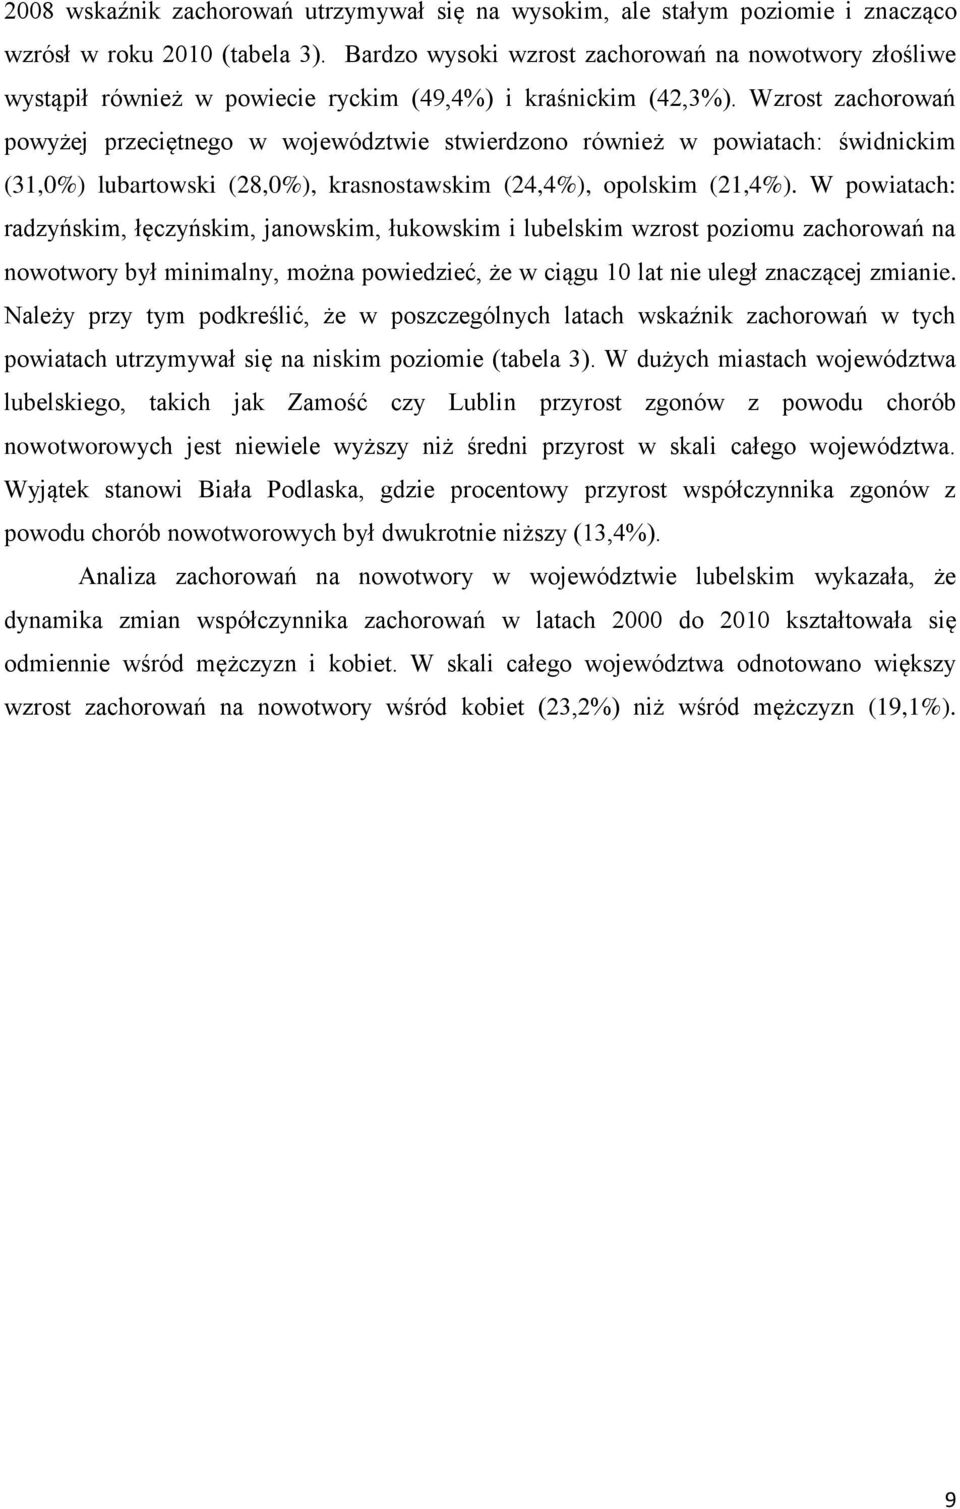 Wzrost zachorowań powyżej przeciętnego w województwie stwierdzono również w powiatach: świdnickim (31,0%) lubartowski (28,0%), krasnostawskim (24,4%), opolskim (21,4%).